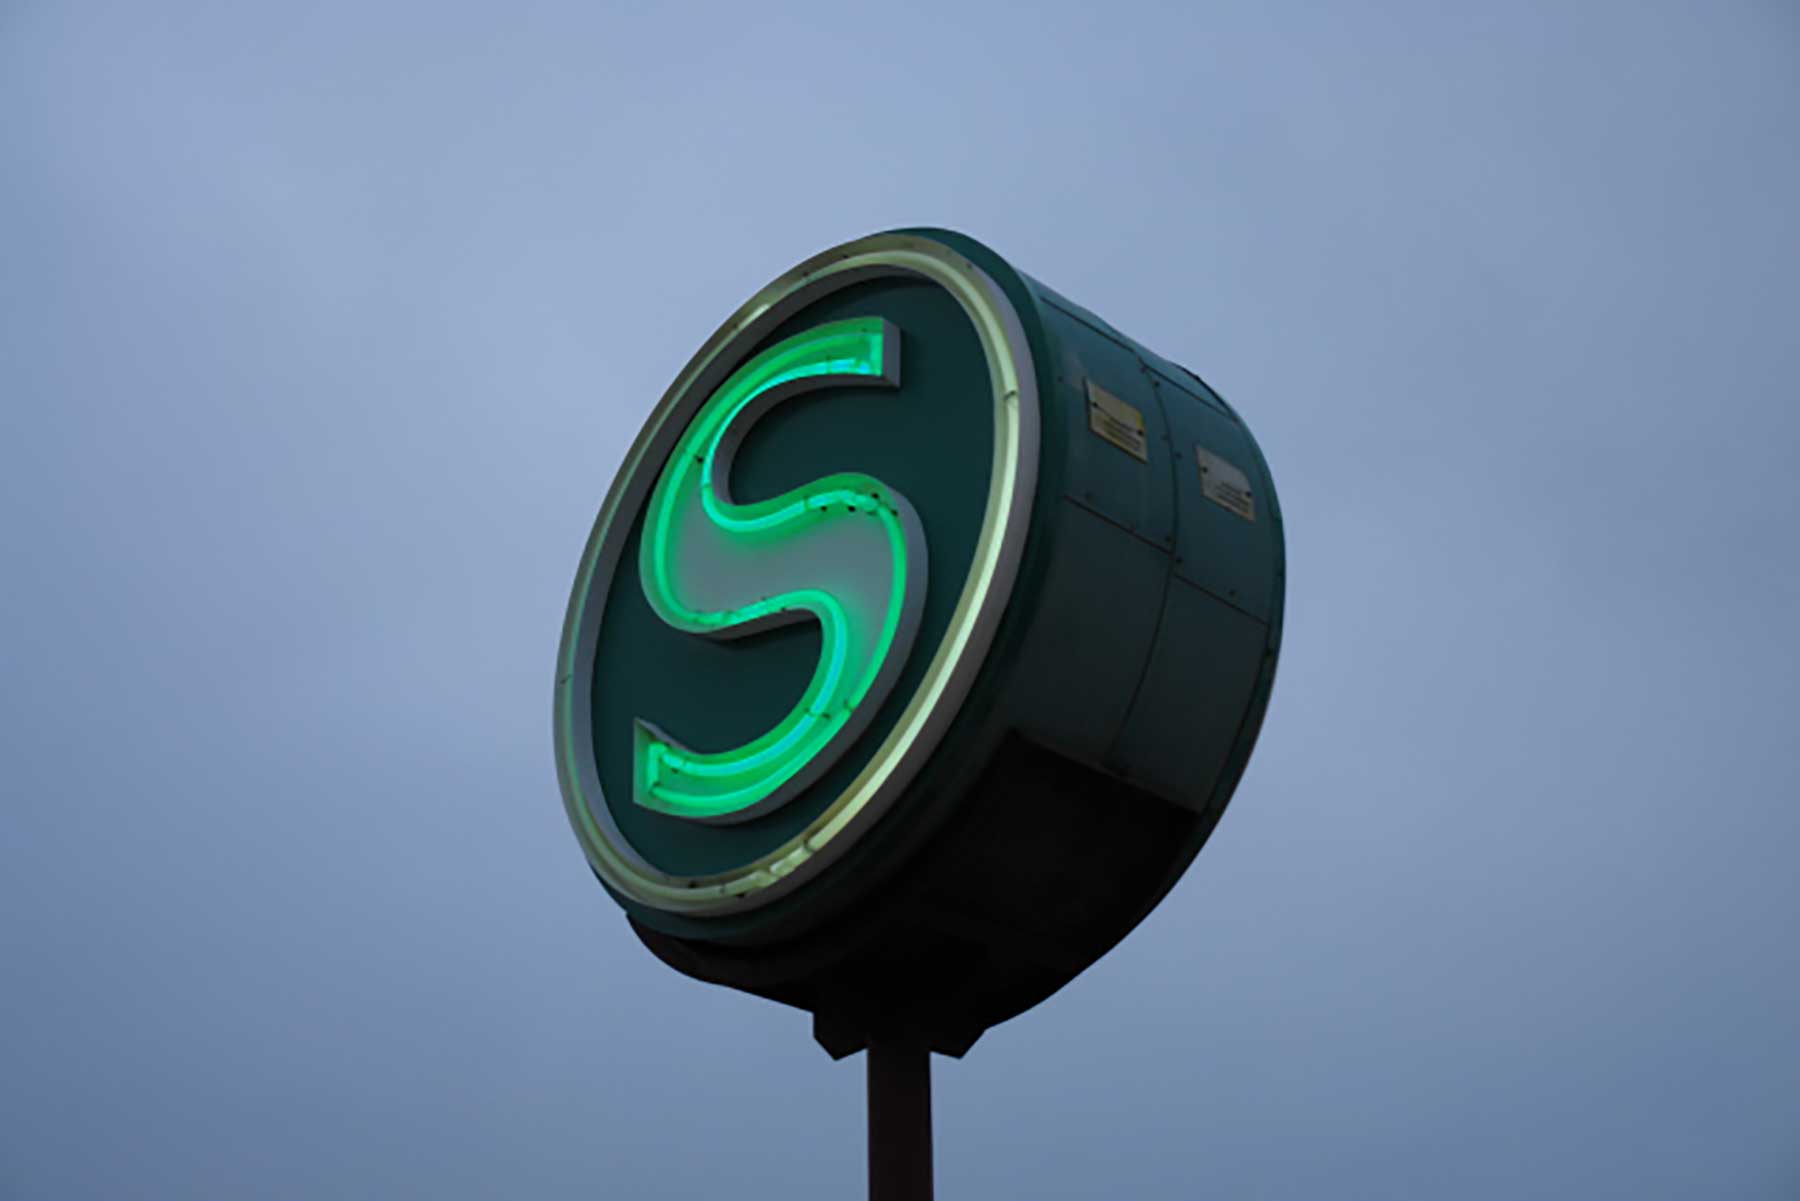 Das grüne Zeichen der Berliner S-Bahn vorm dämmernden Abendhimmel